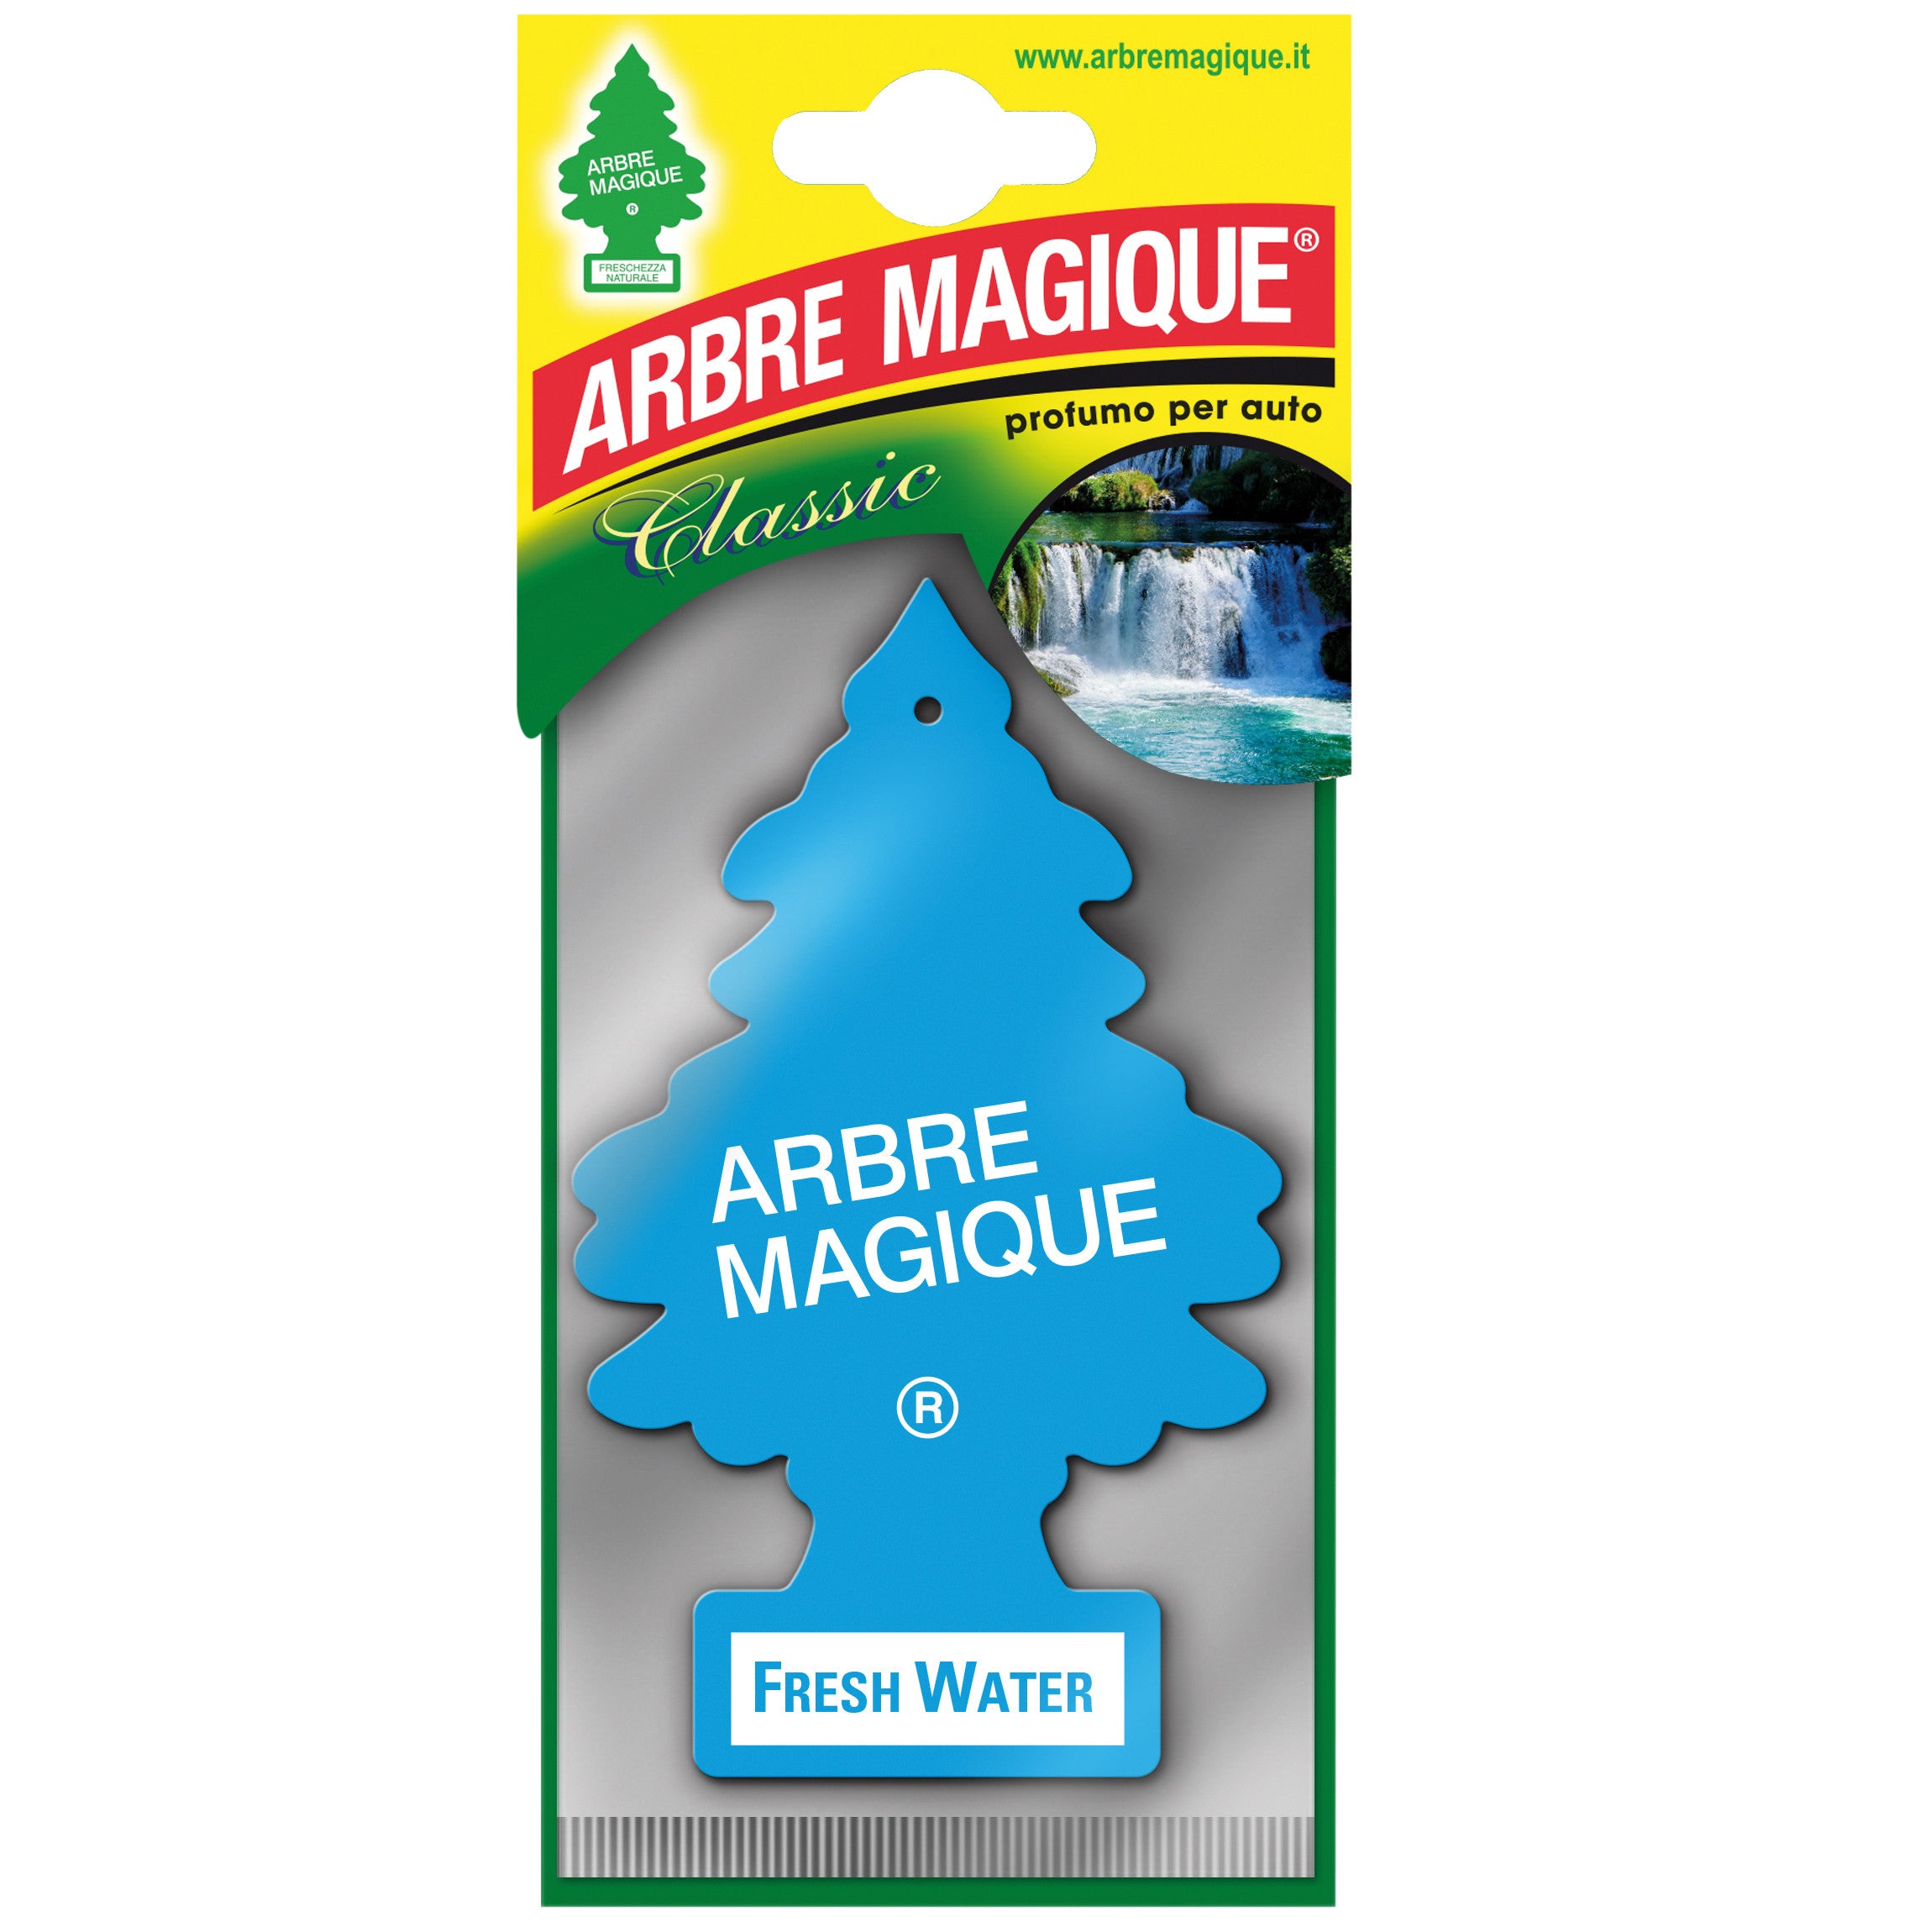 Arbre magique classic fresh water